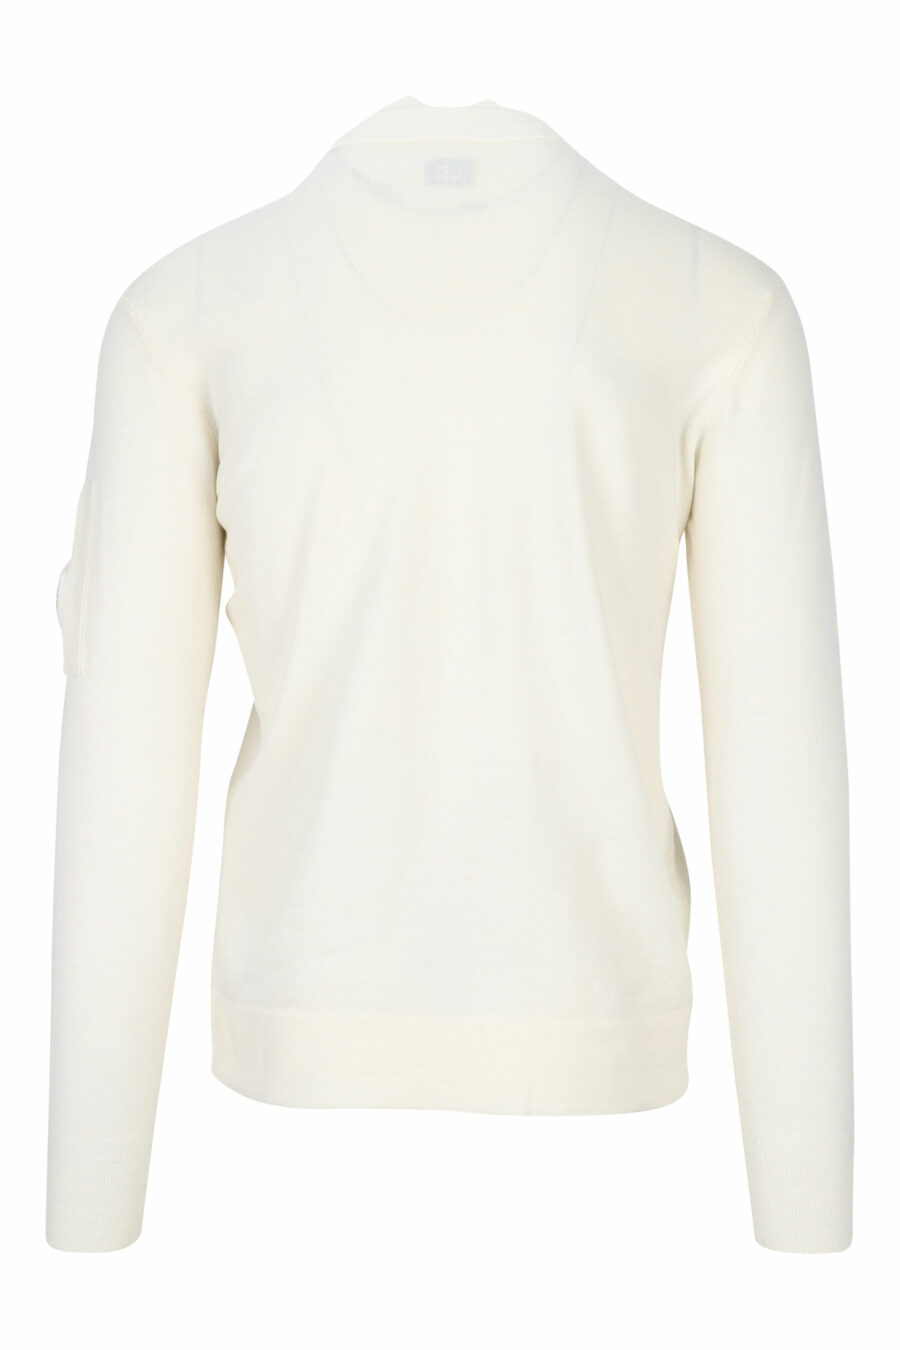 C.P. Company - Sudadera blanca con capucha y logo lateral lente - BLS  Fashion